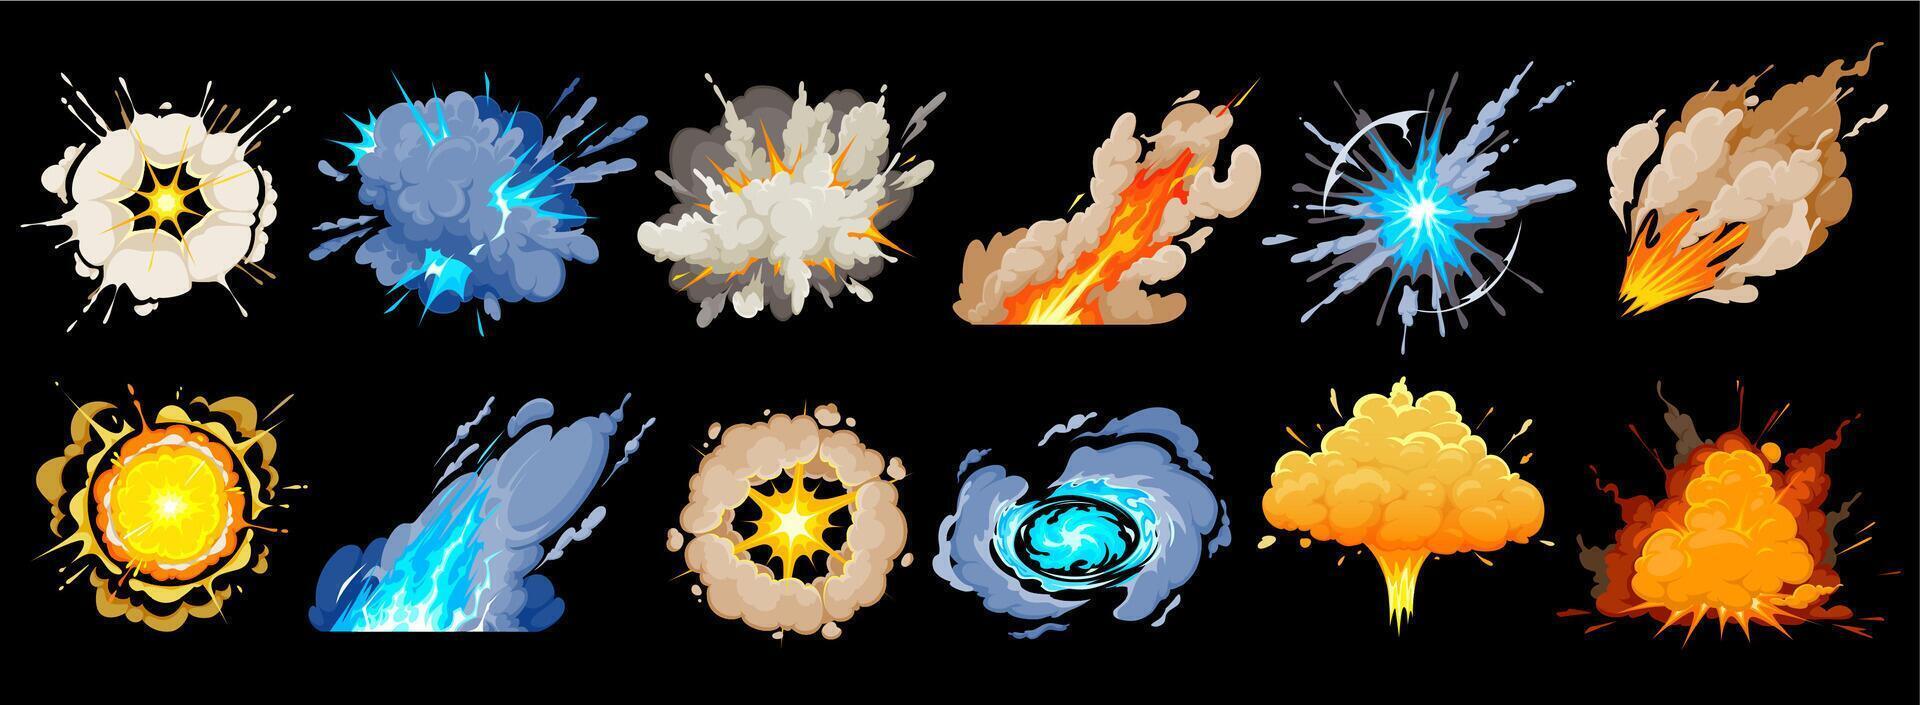 dessin animé bombe explosions, fumée et boom explosions vecteur